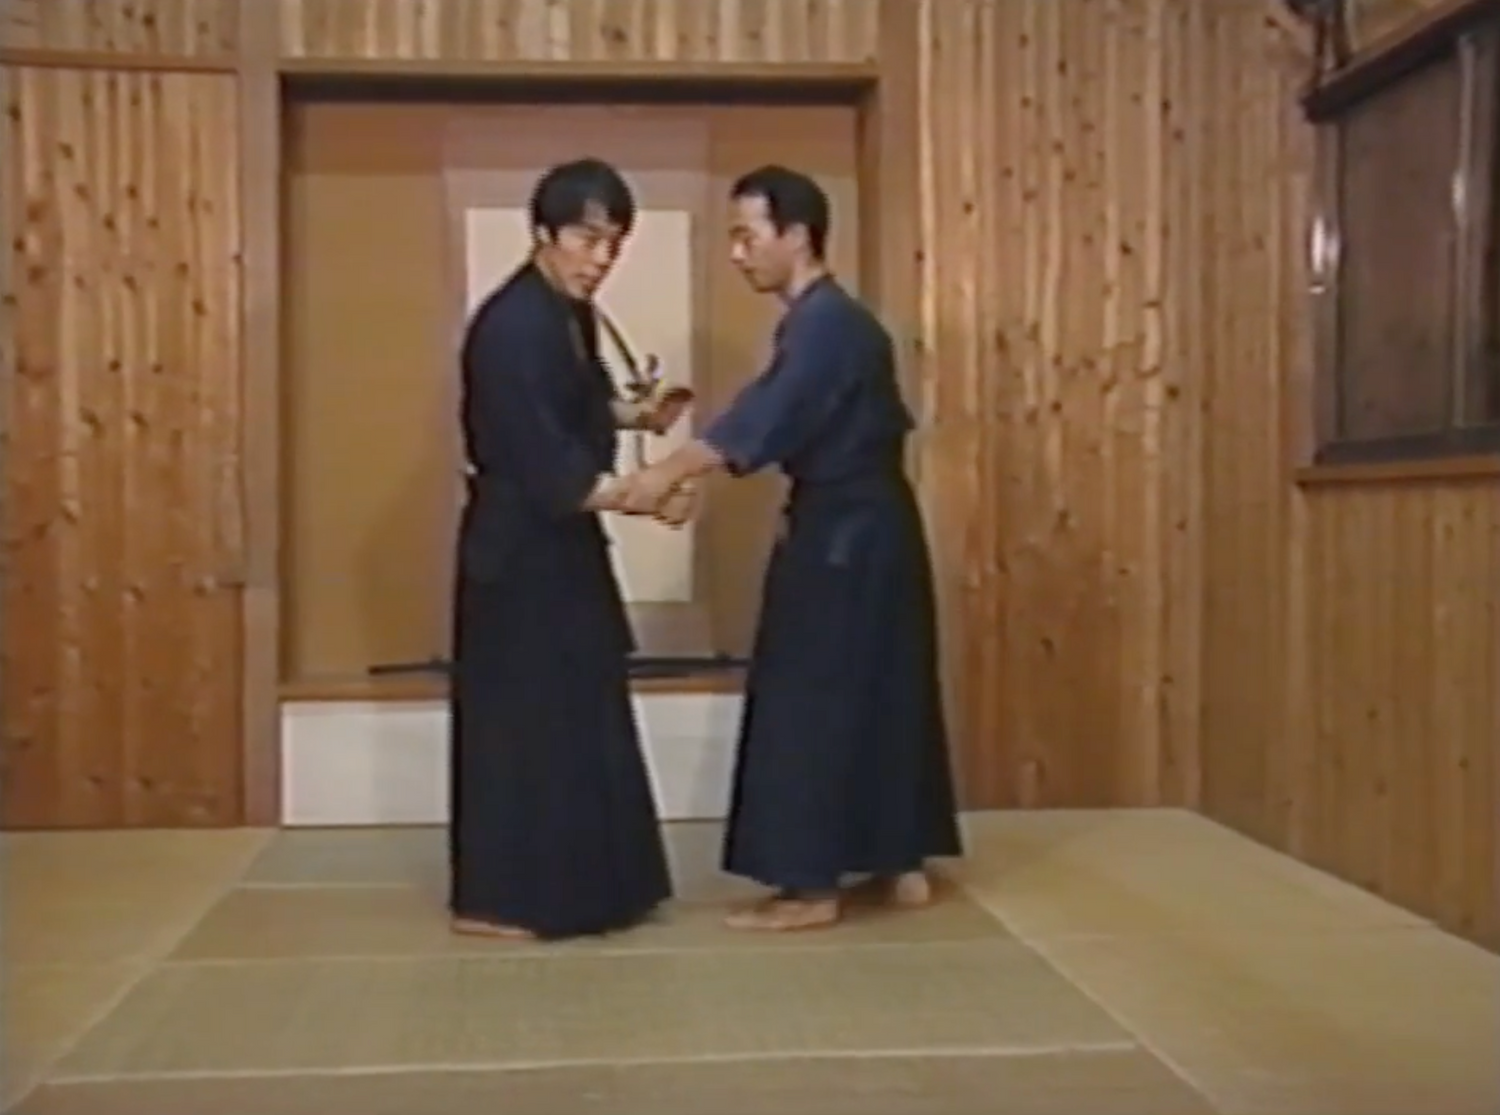 Yoshinori Kono Roots of Bujutsu 7 VHS Set (seminuevo)